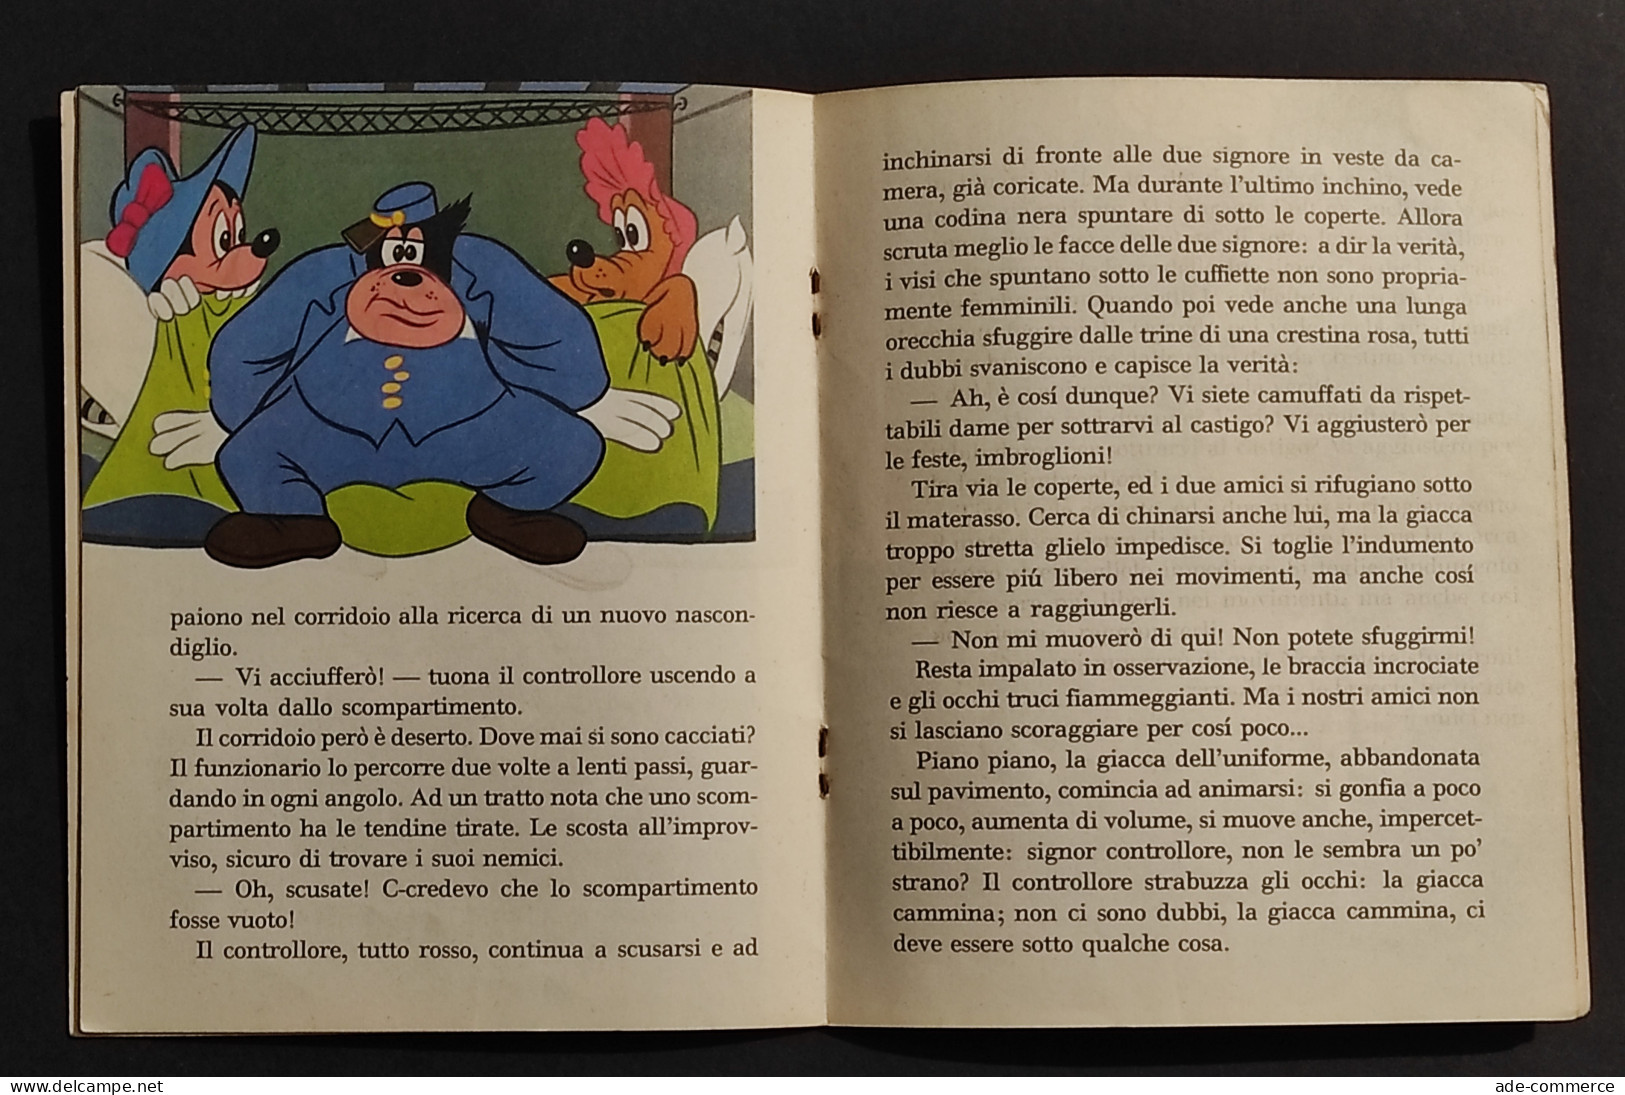 Un Viaggio Movimentato - Walt Disney - Ed. Mondadori - 1967 I Ed. - Bambini